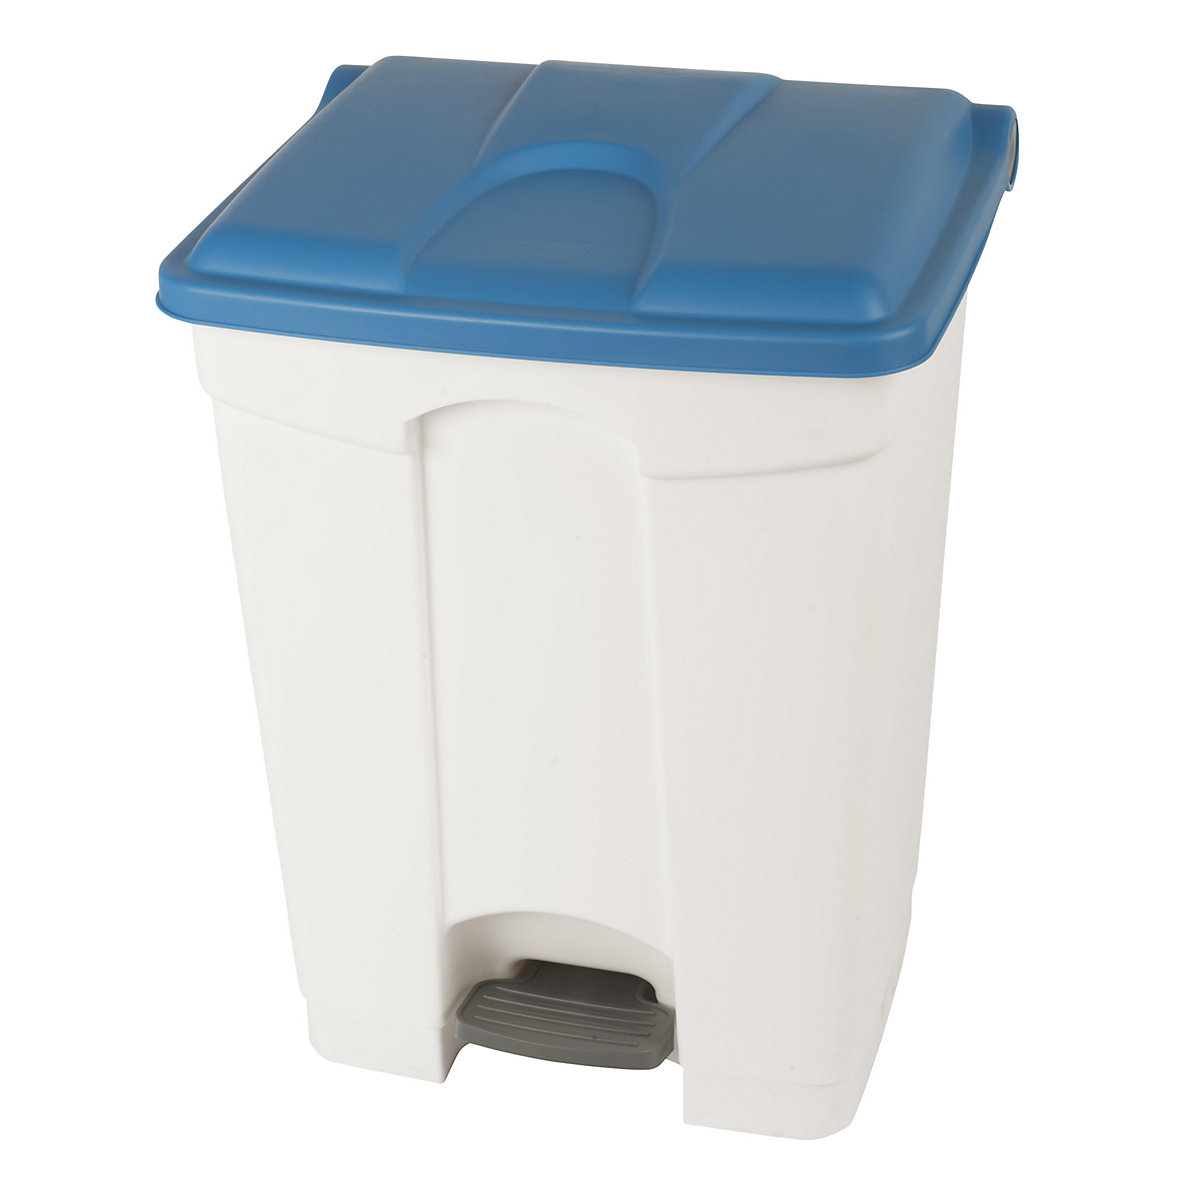 Spremnik za otpad s papučicom, volumen 70 l, ŠxVxD 505 x 675 x 415 mm, u bijeloj boji, poklopac u plavoj boji-9